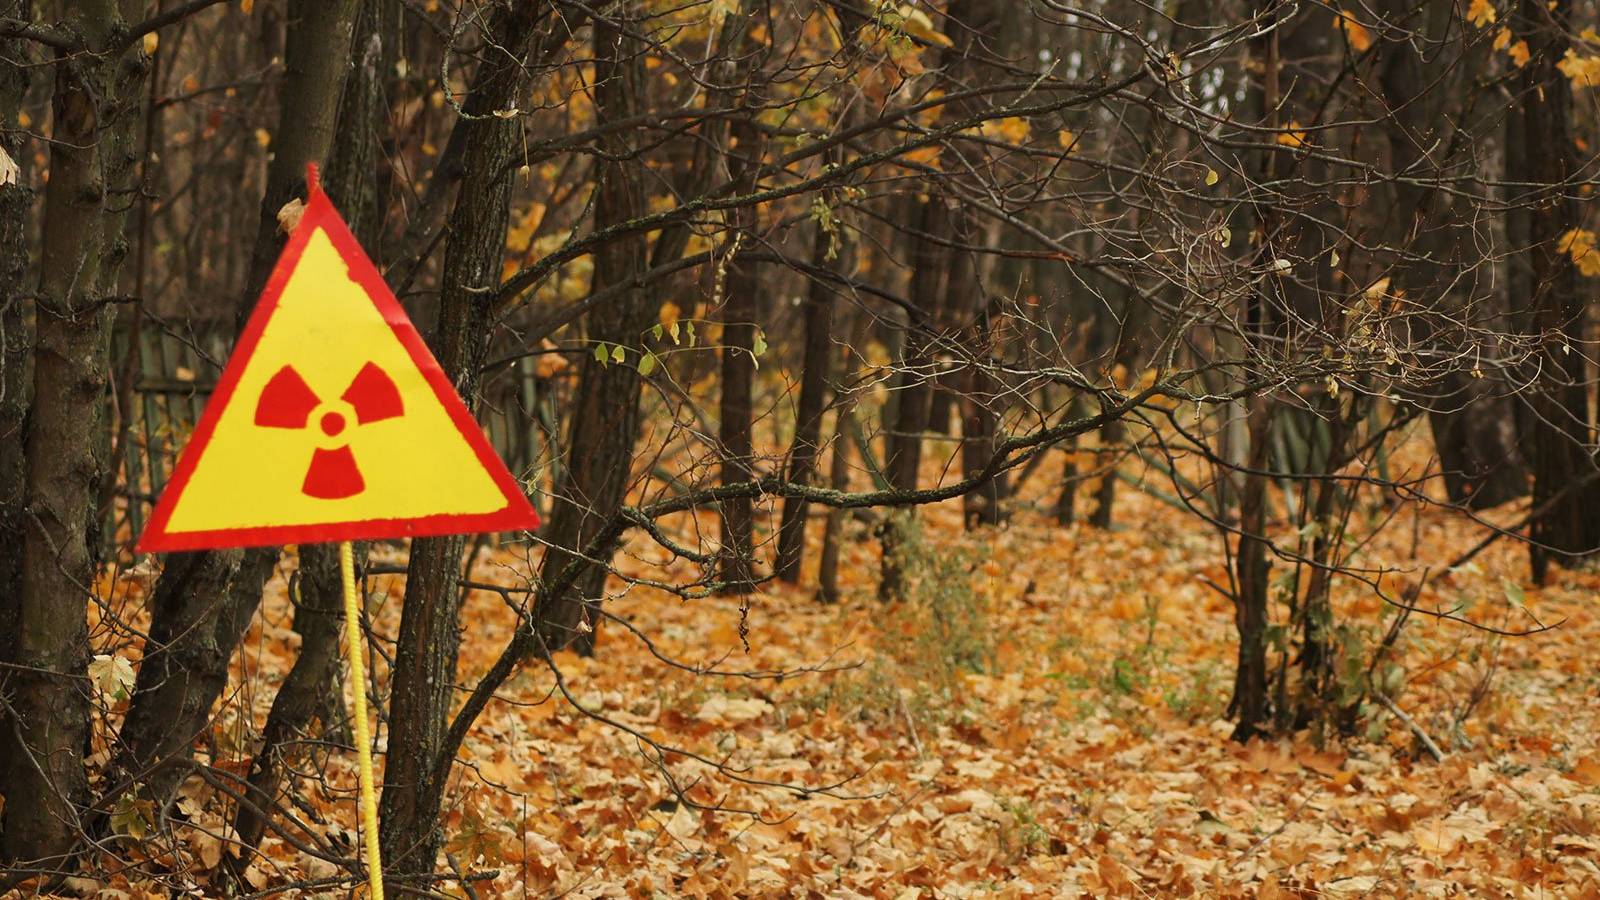 Soldatii Rusi au Ridicat Praf Radioactiv in Aer in Padurea Rosie de la Cernobyl